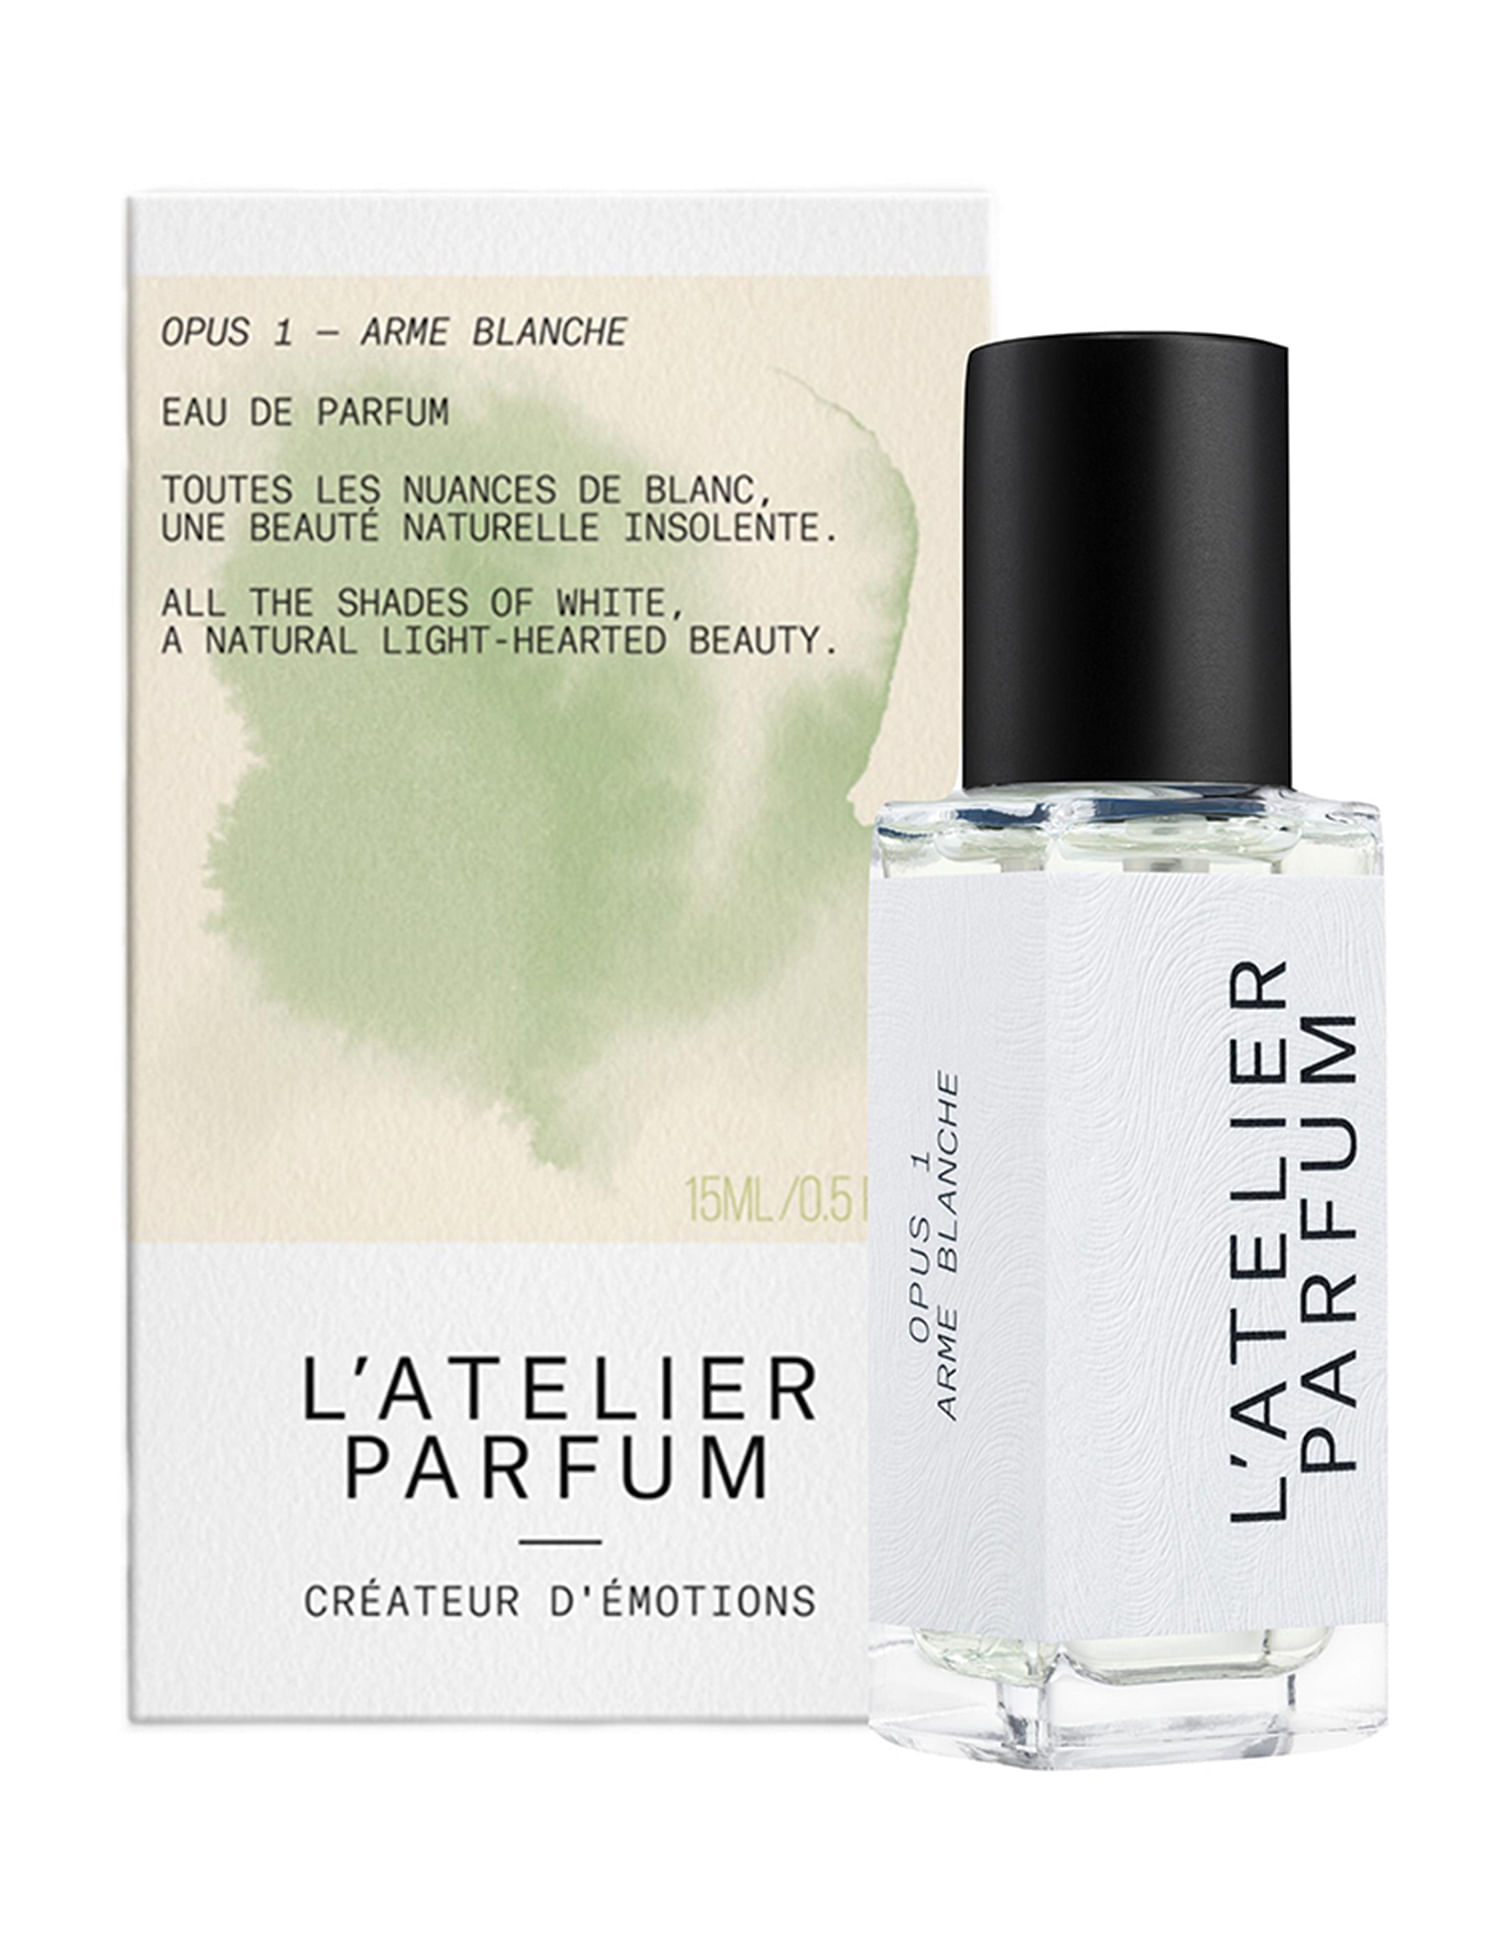 Ательер отзывы. Духи l'Atelier Parfum Opus 1 douce Insomnia отзывы. L'Atelier Parfum douce Insomnia отзывы покупателей.